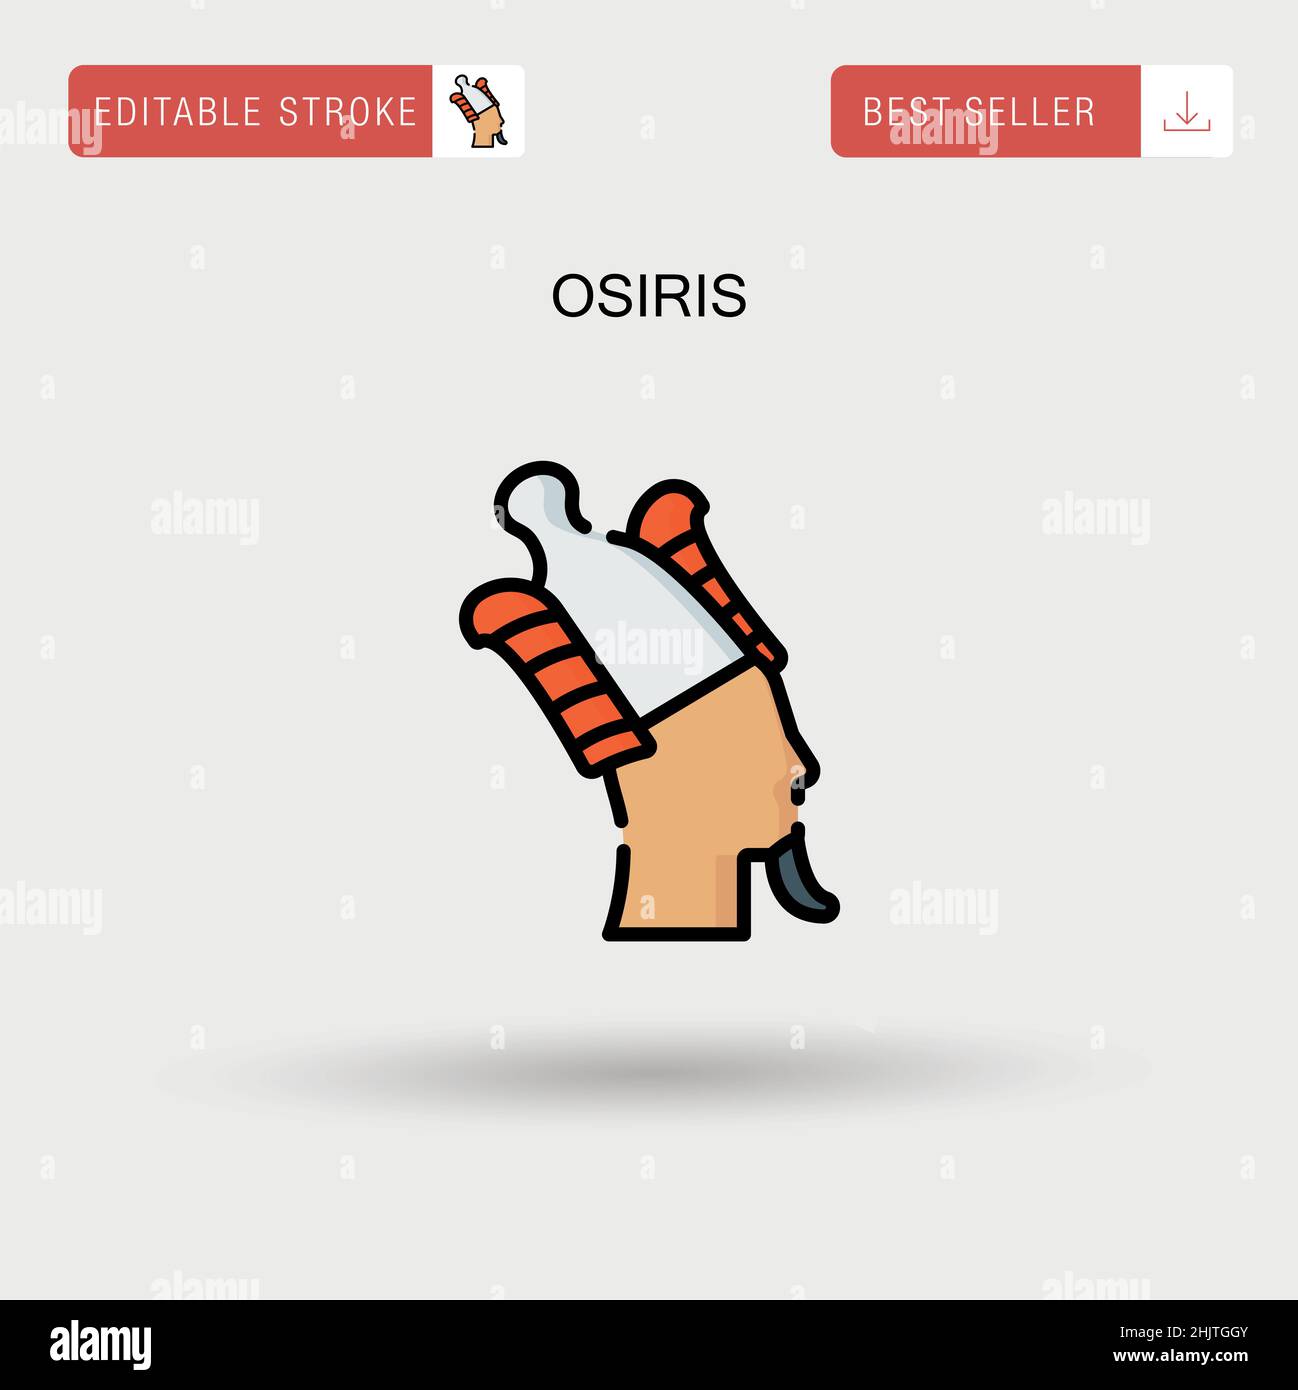 Osiris Simple vector icon. Stock Vector